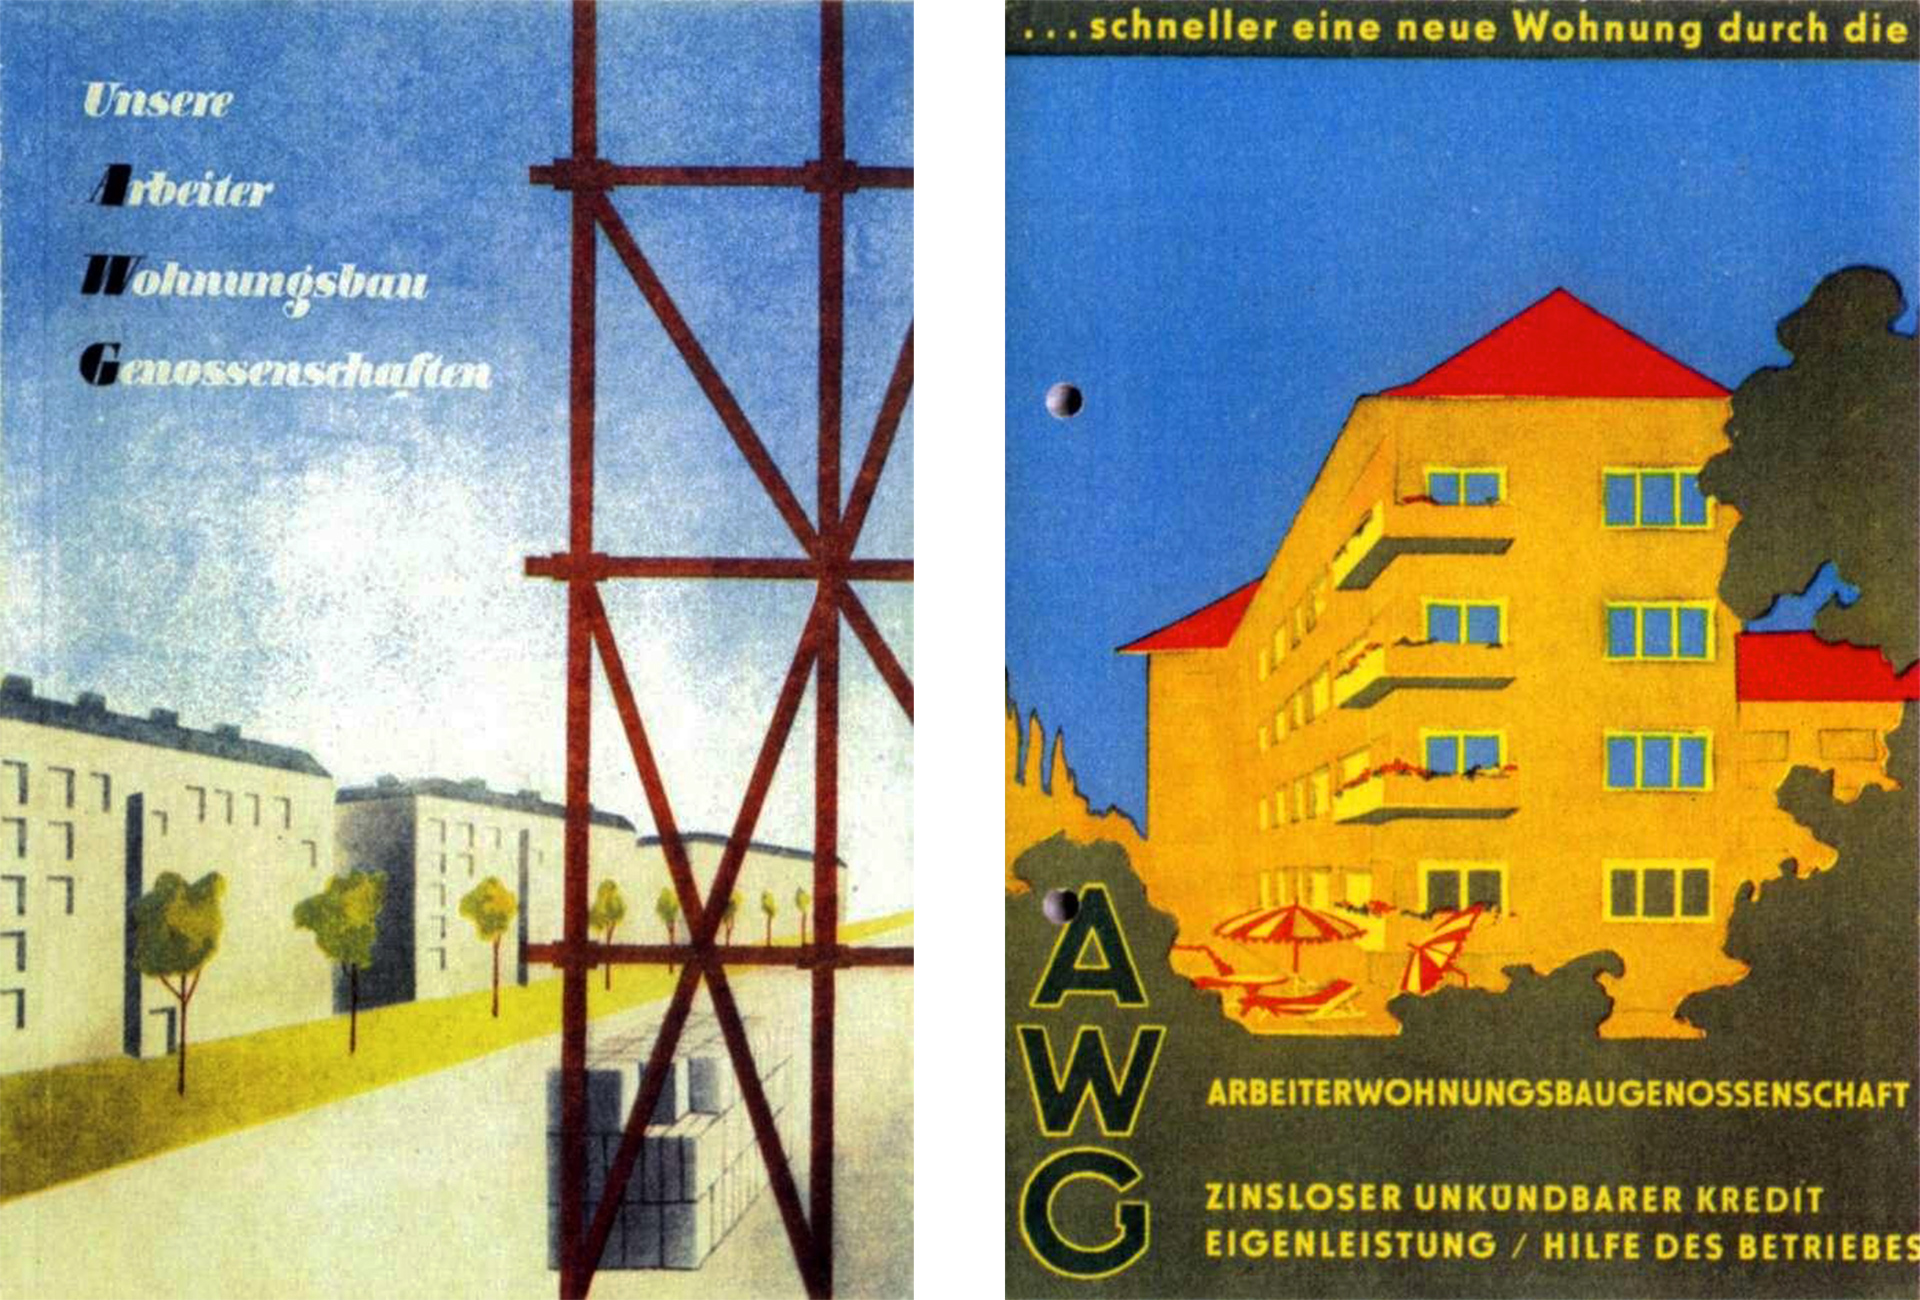 Abb. 1 & 2: Vom Freien Deutschen Gewerkschaftsbund (FDGB) herausgegebene AWG-Broschüren aus dem Jahr 1958.